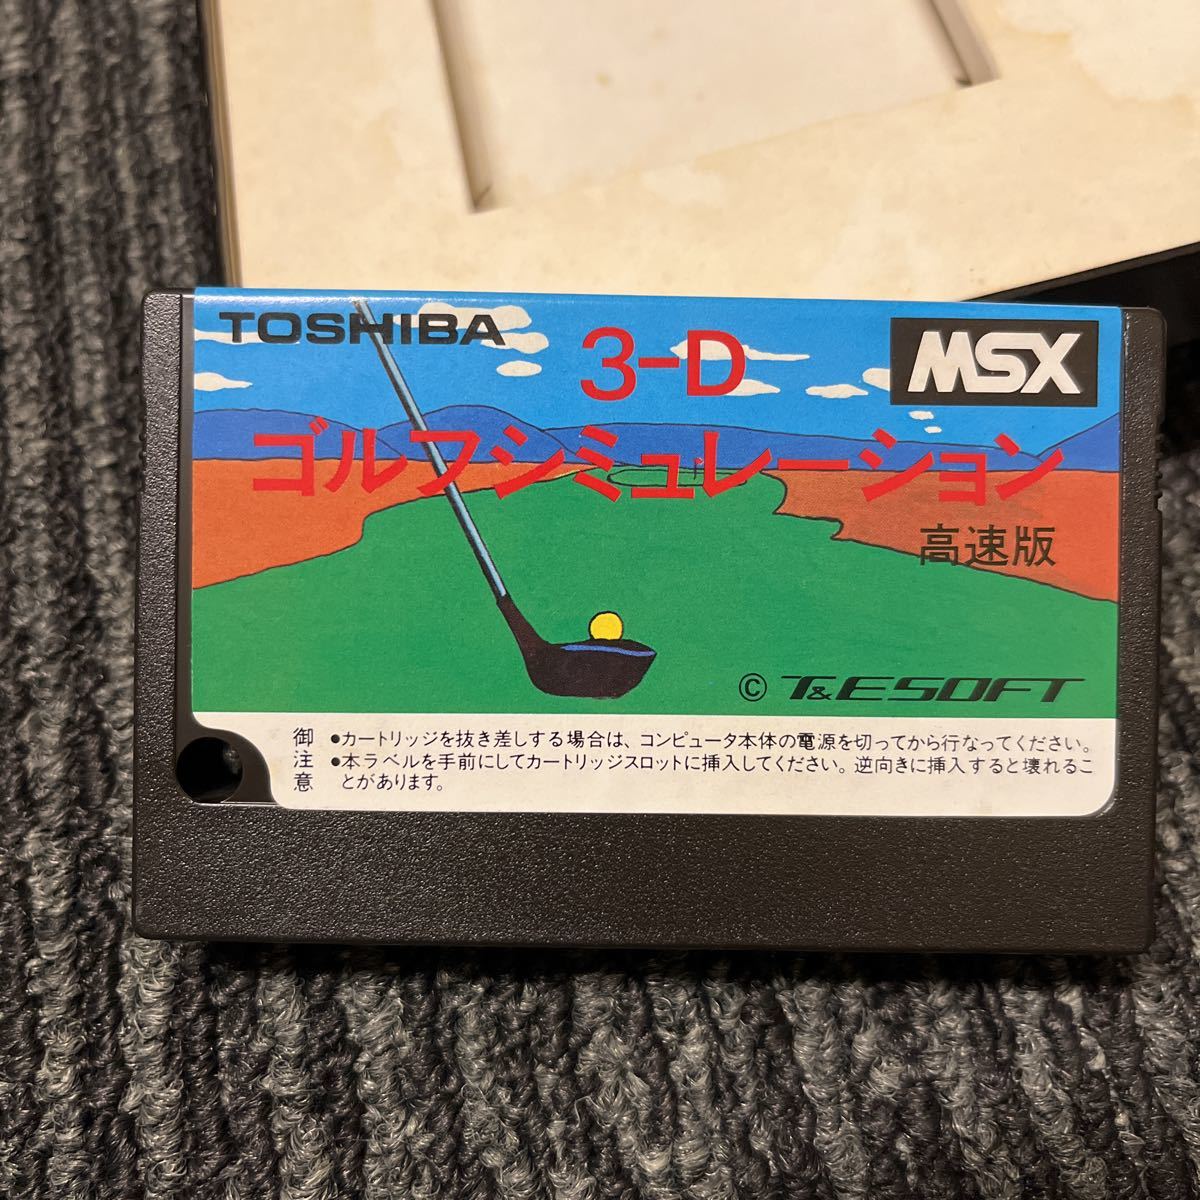 MSX 3-D ゴルフシミュレーション 高速版 3-D GOLF SIMULATION